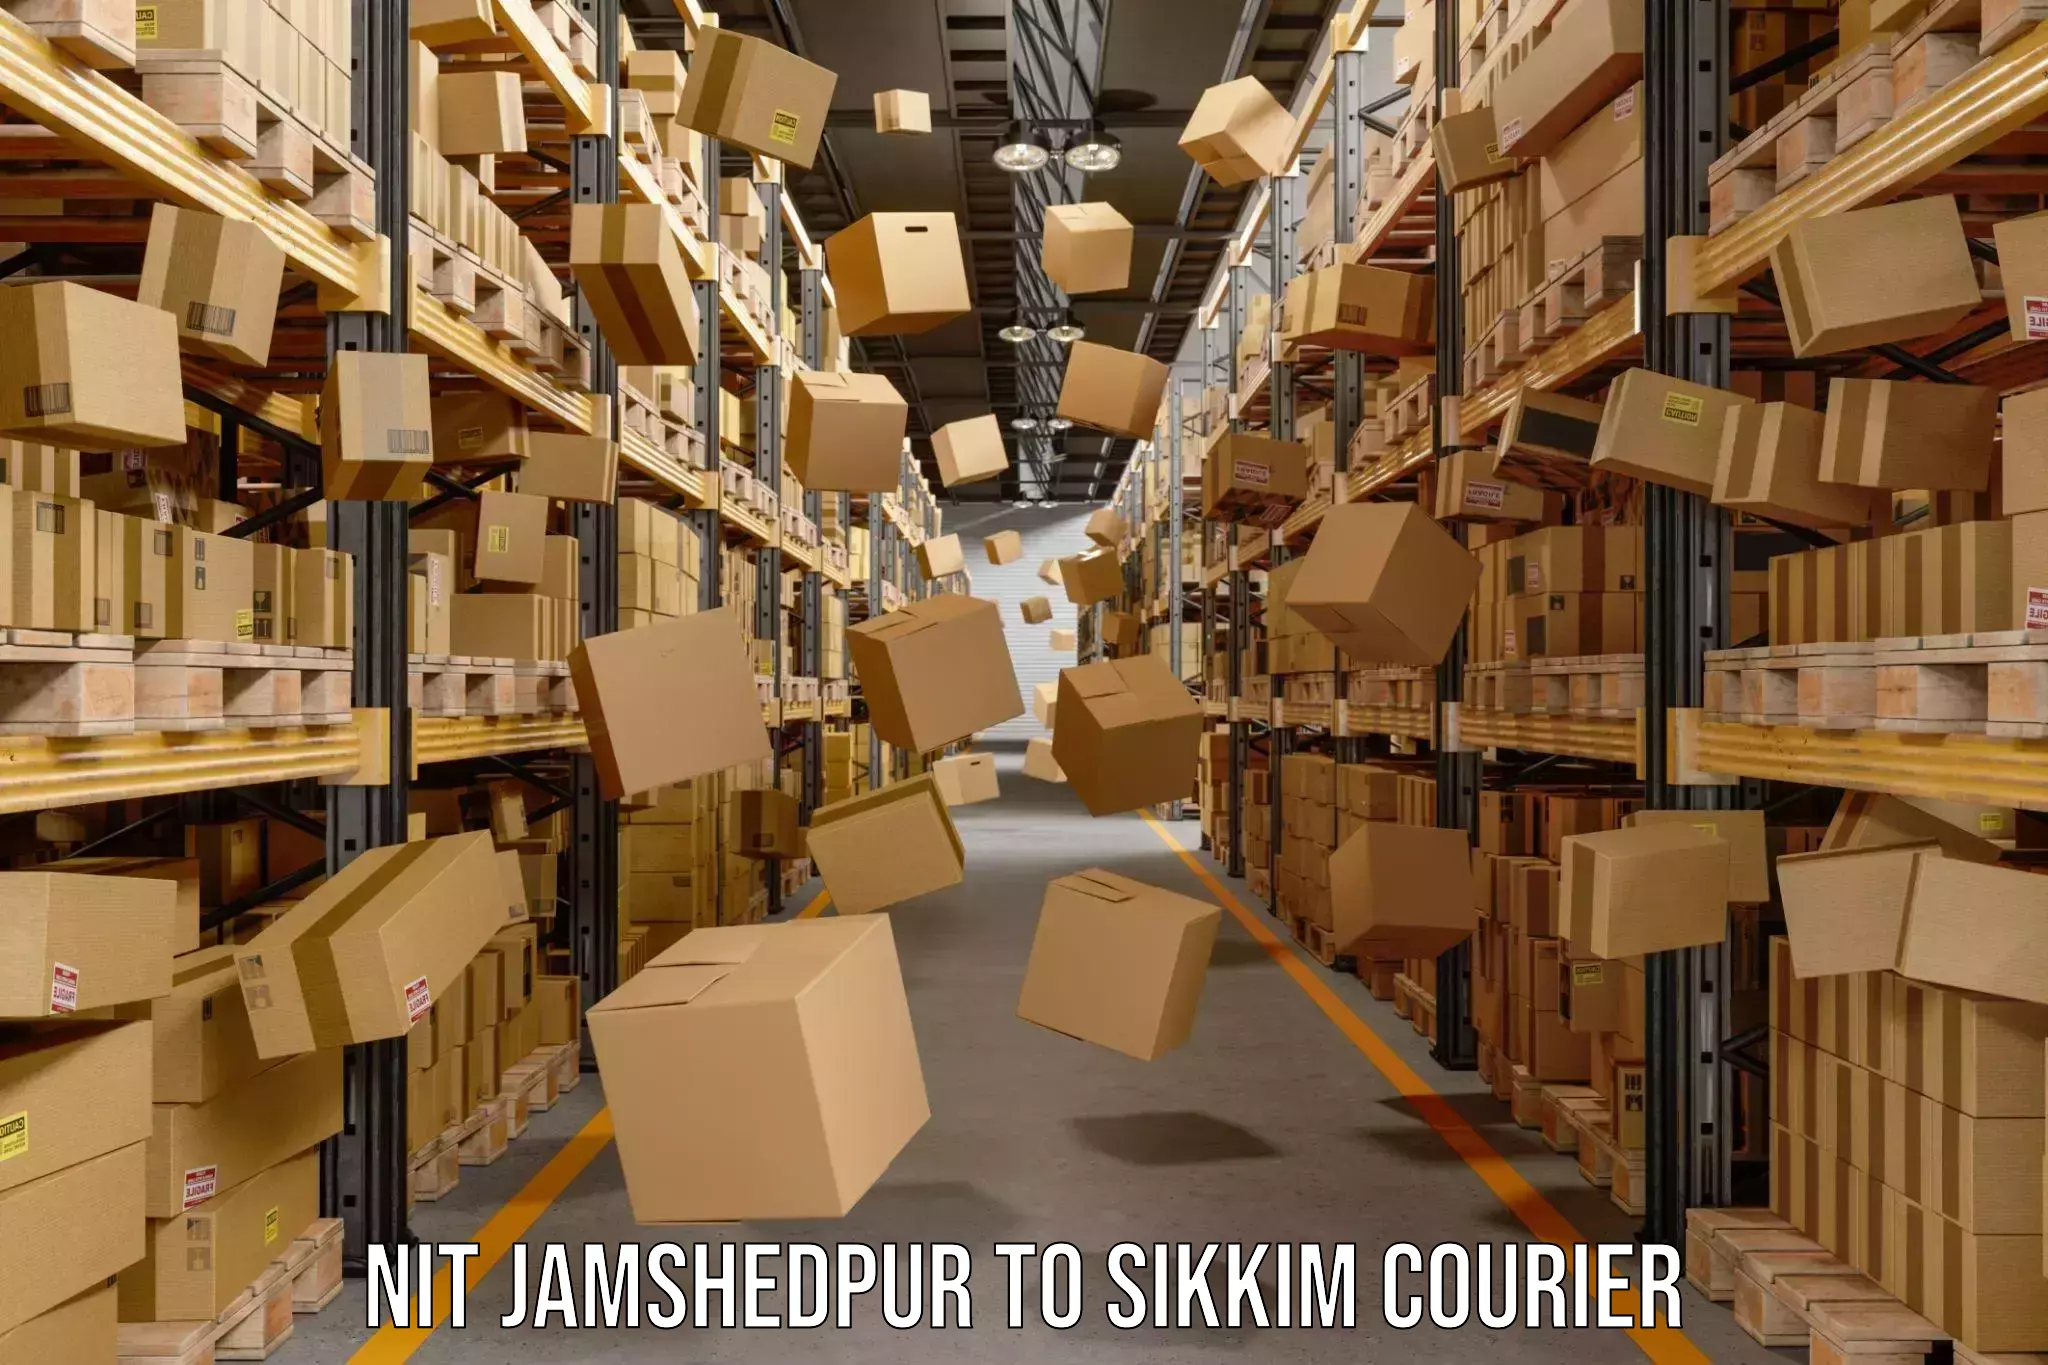 Digital courier platforms NIT Jamshedpur to Sikkim